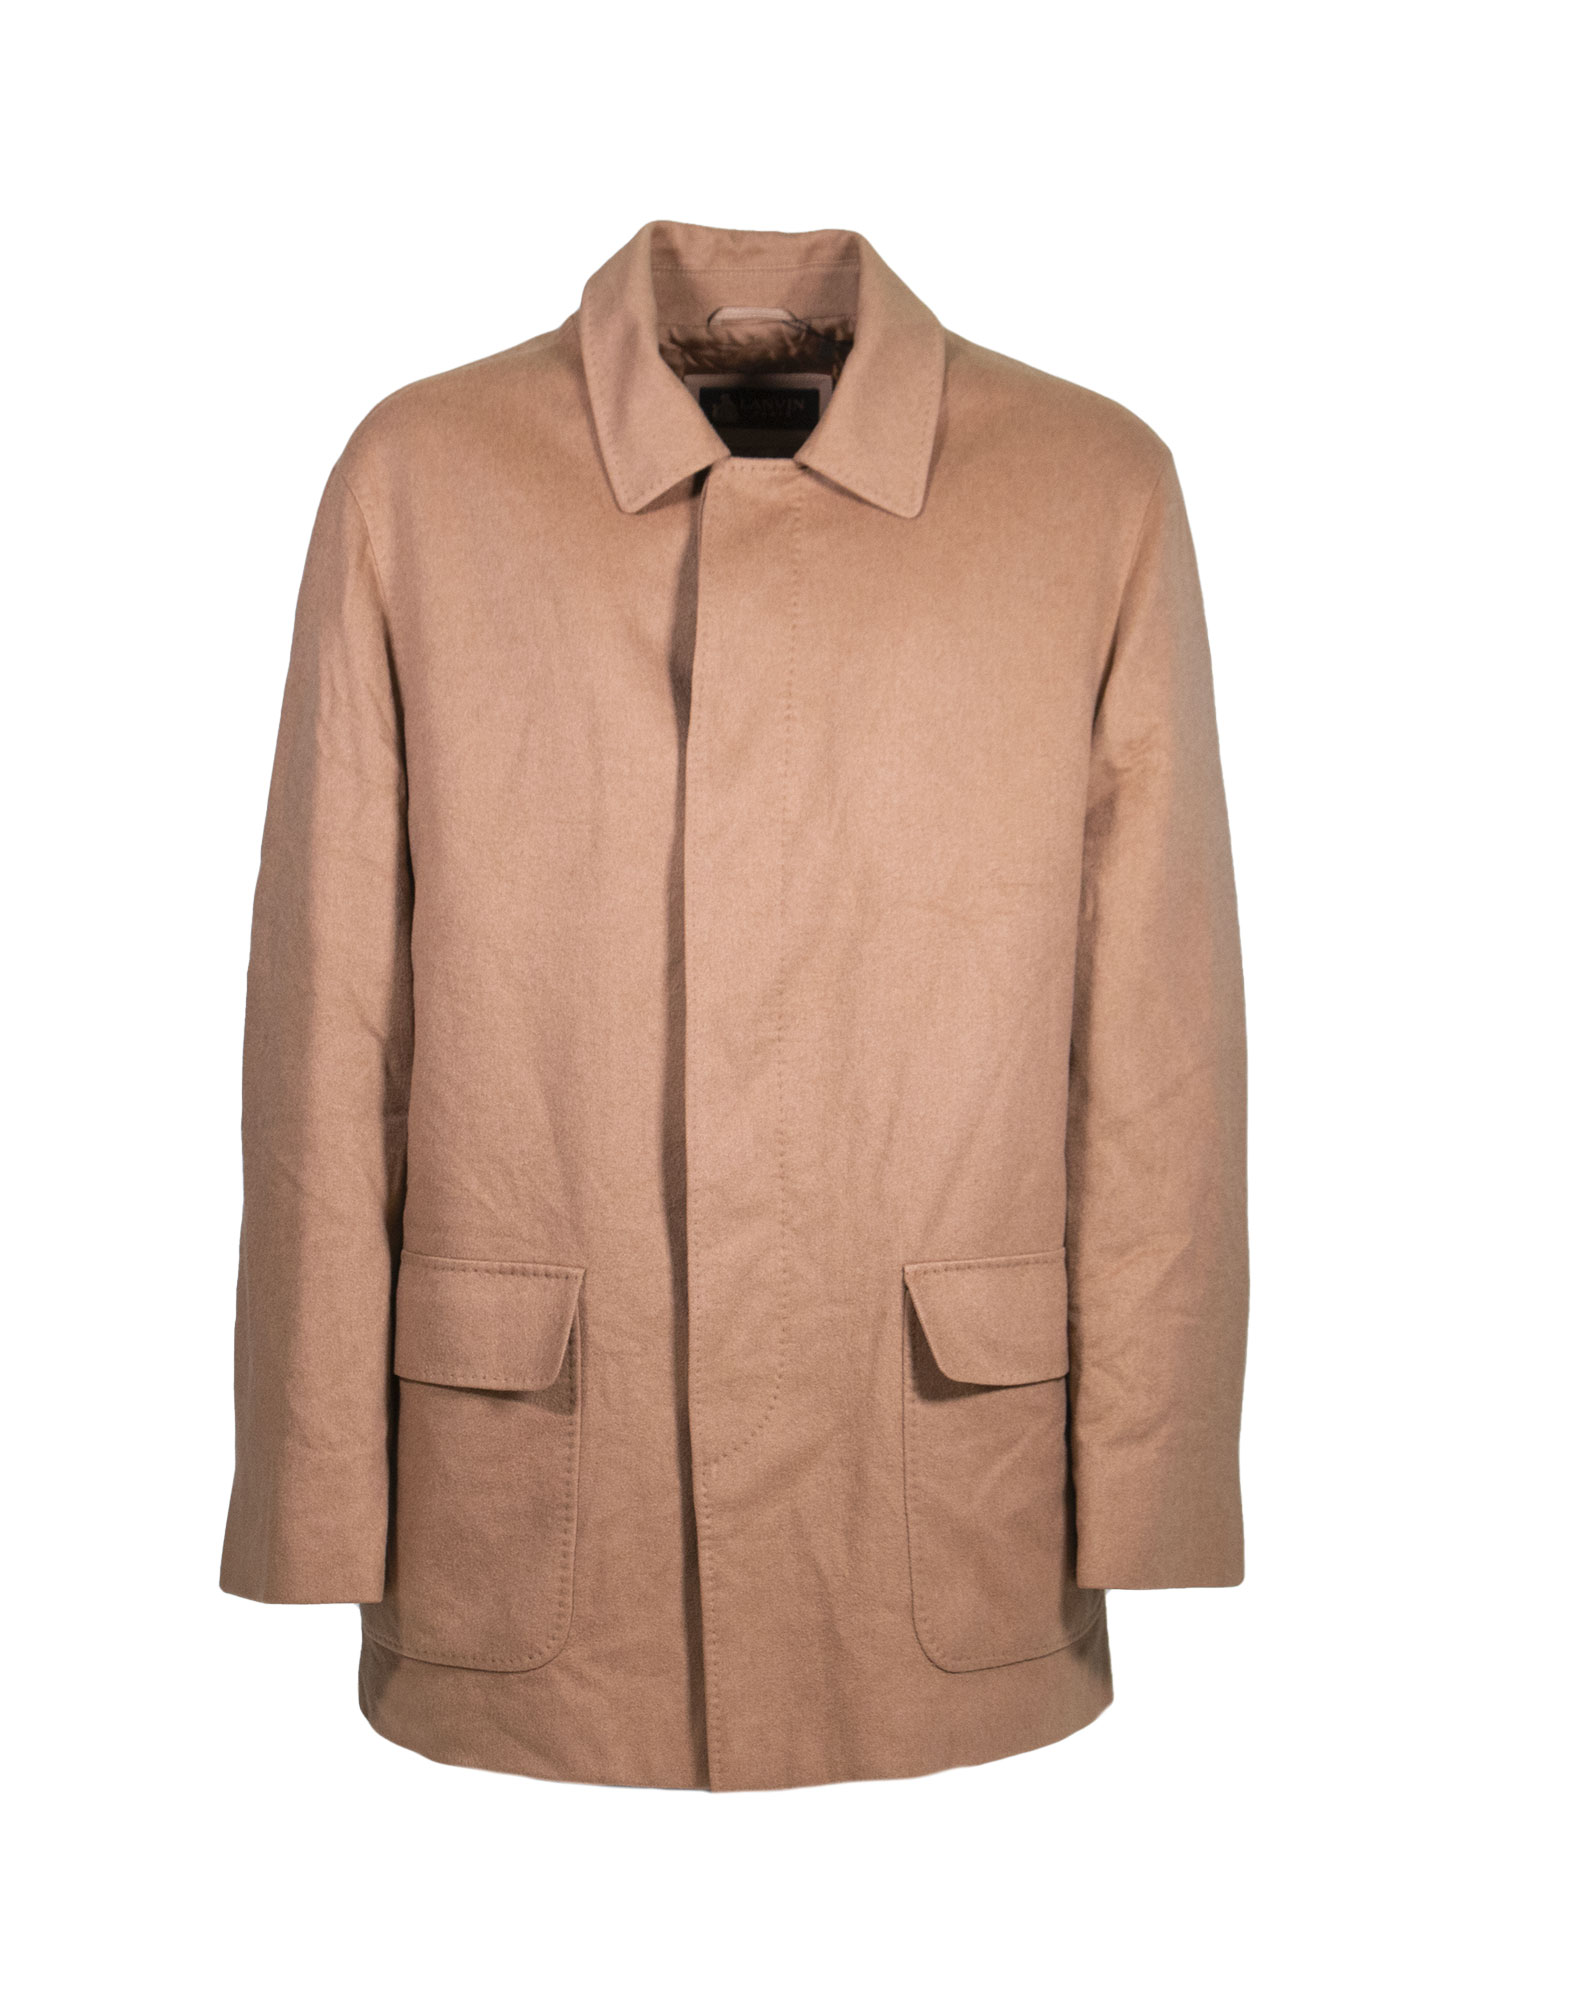 Lanvin - 1980s 100% cashmere coat